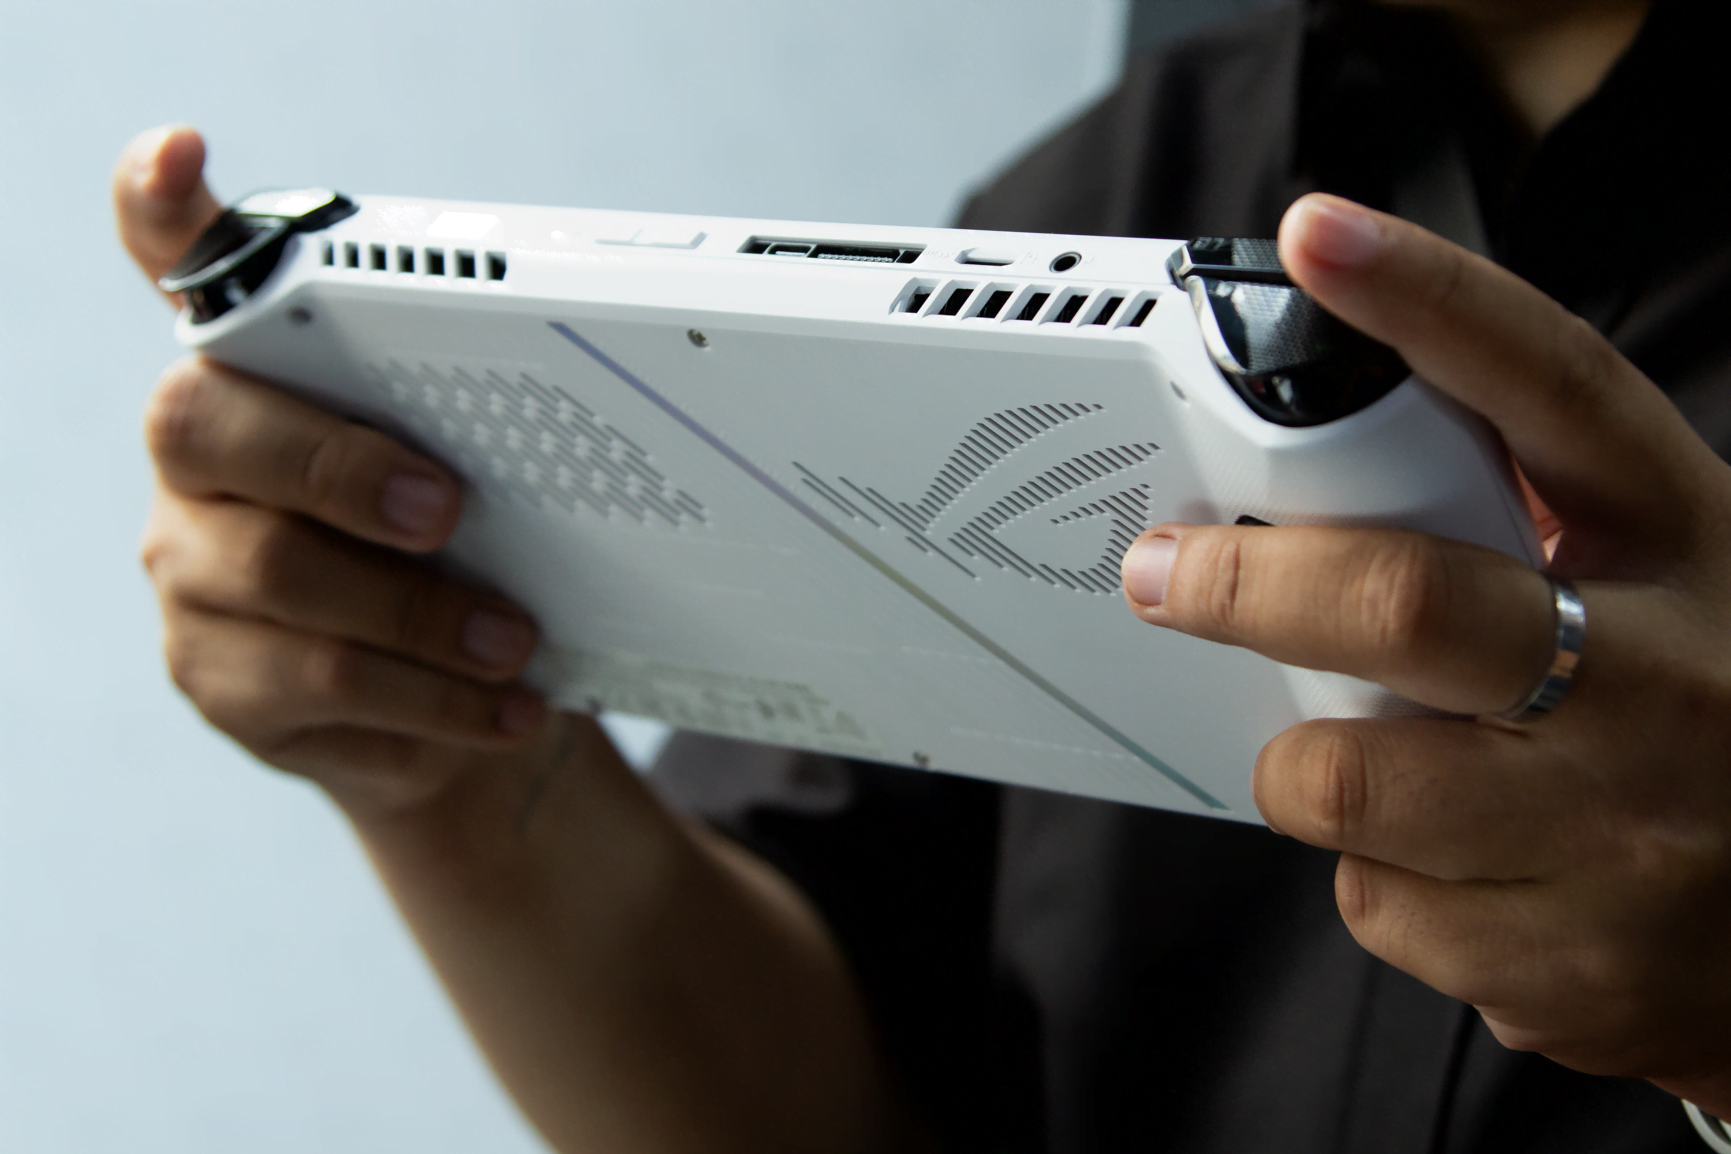 [PR] ASUS ra mắt ROG Ally - Cỗ máy chơi game cầm tay đầu tiên của hãng trang bị vi xử lý AMD Ryzen Z1 Series mới nhất - Image 2